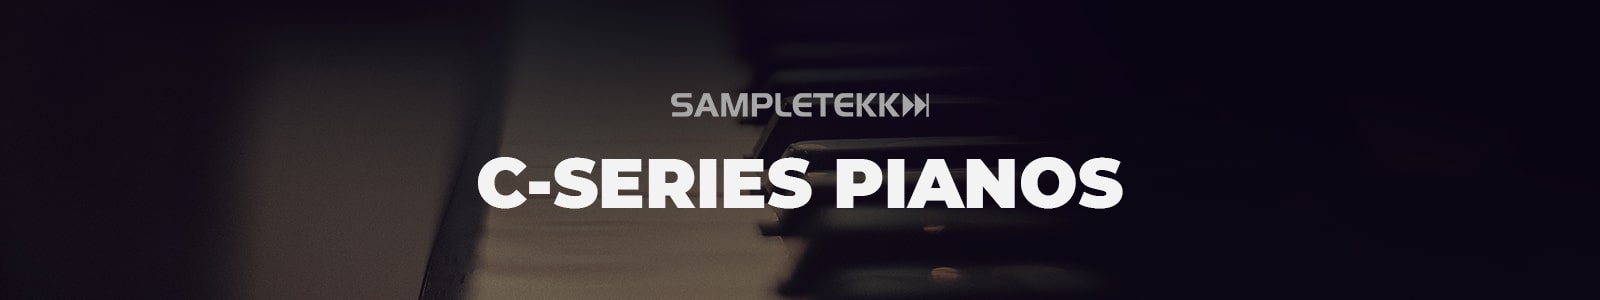 C-Series Piano Bundle by Sampletekk